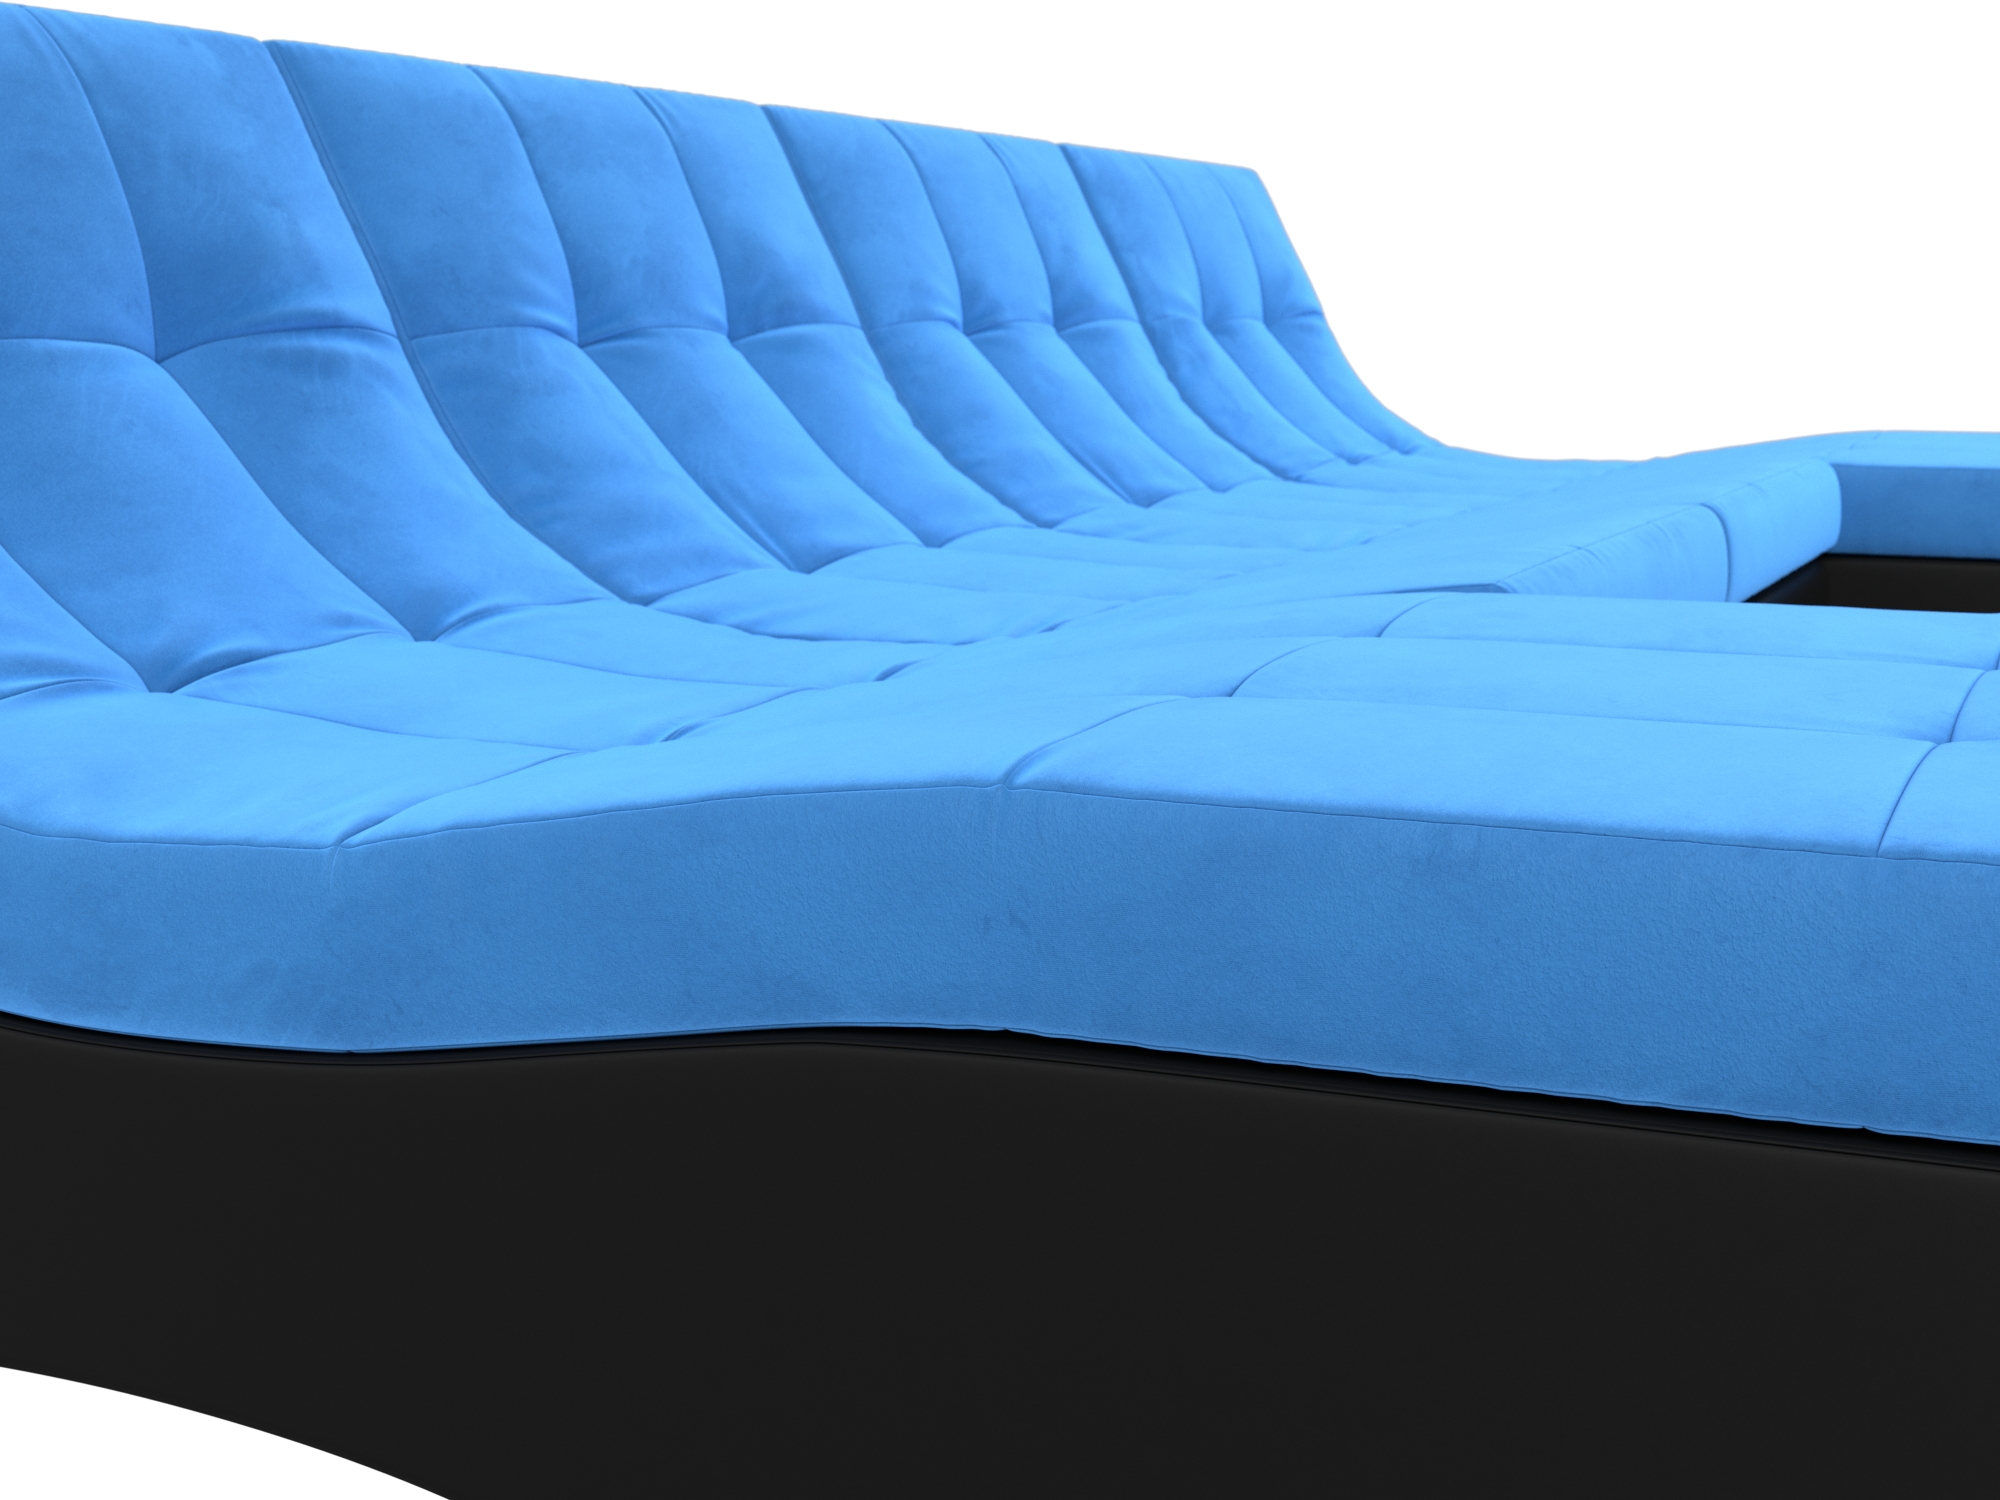 П-образный модульный диван Монреаль (Голубой\Черный)